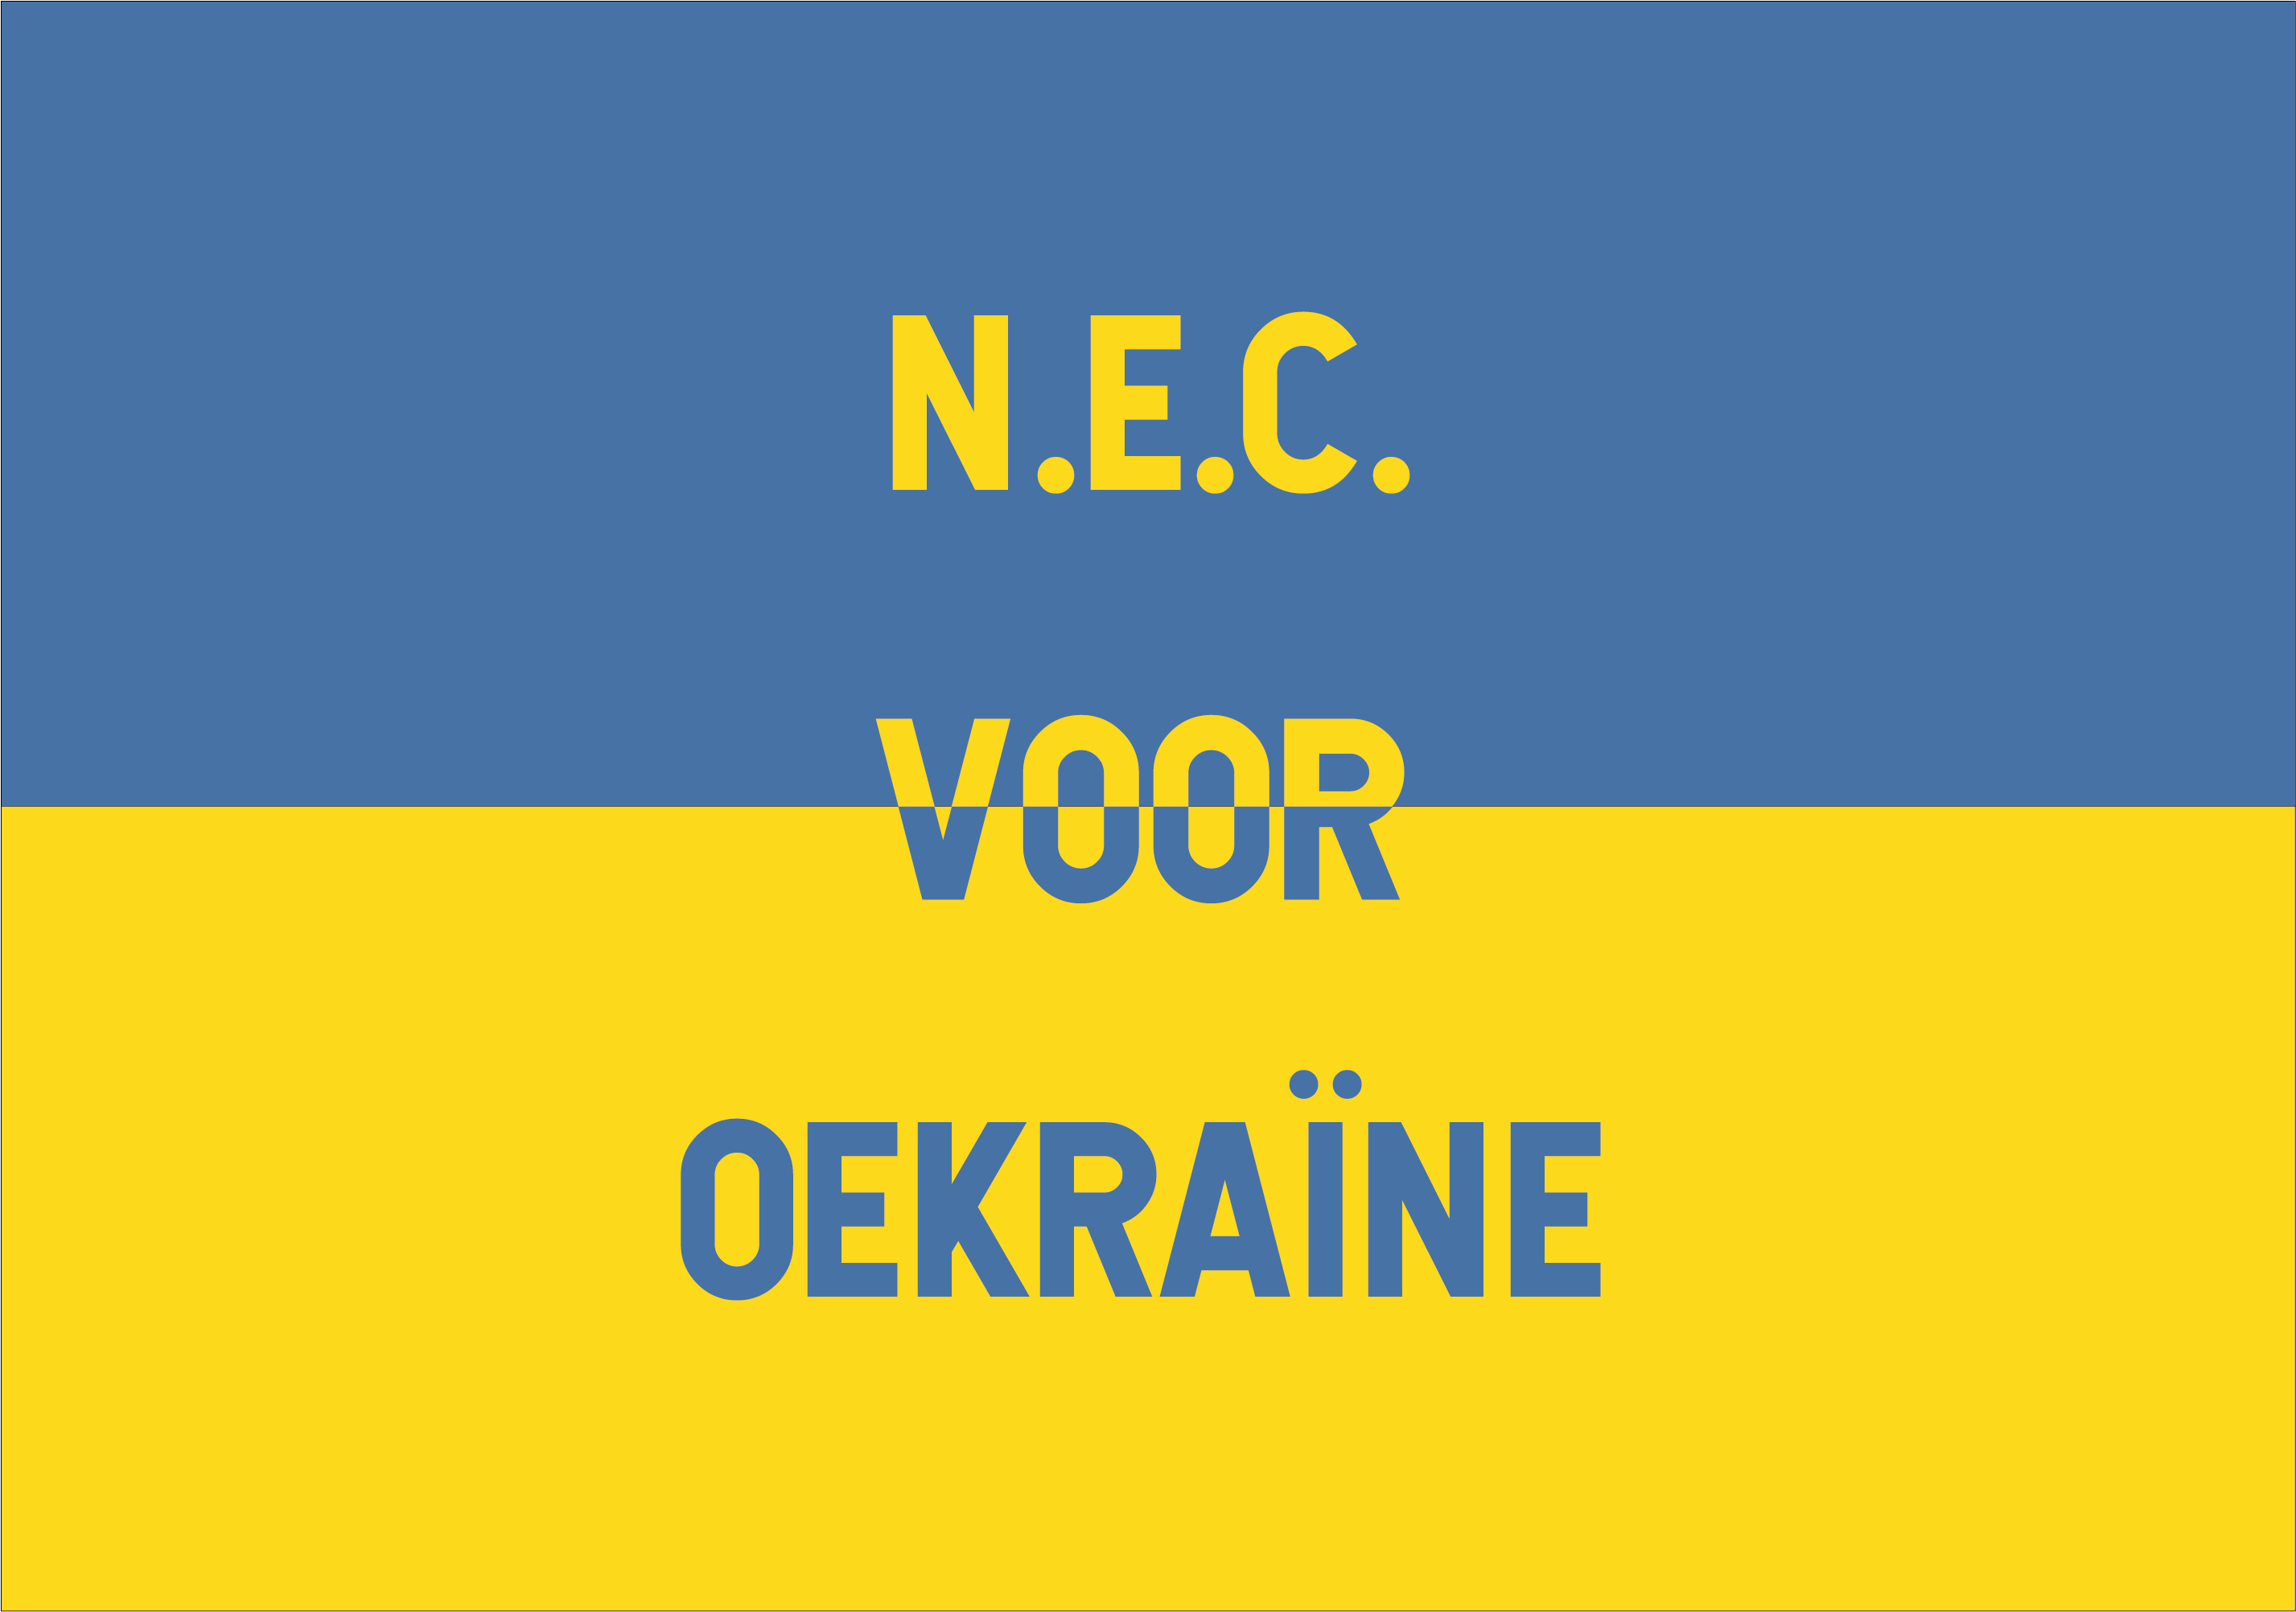 Mooie opbrengst naar aanleiding van ‘N.E.C. voor Oekraïne’